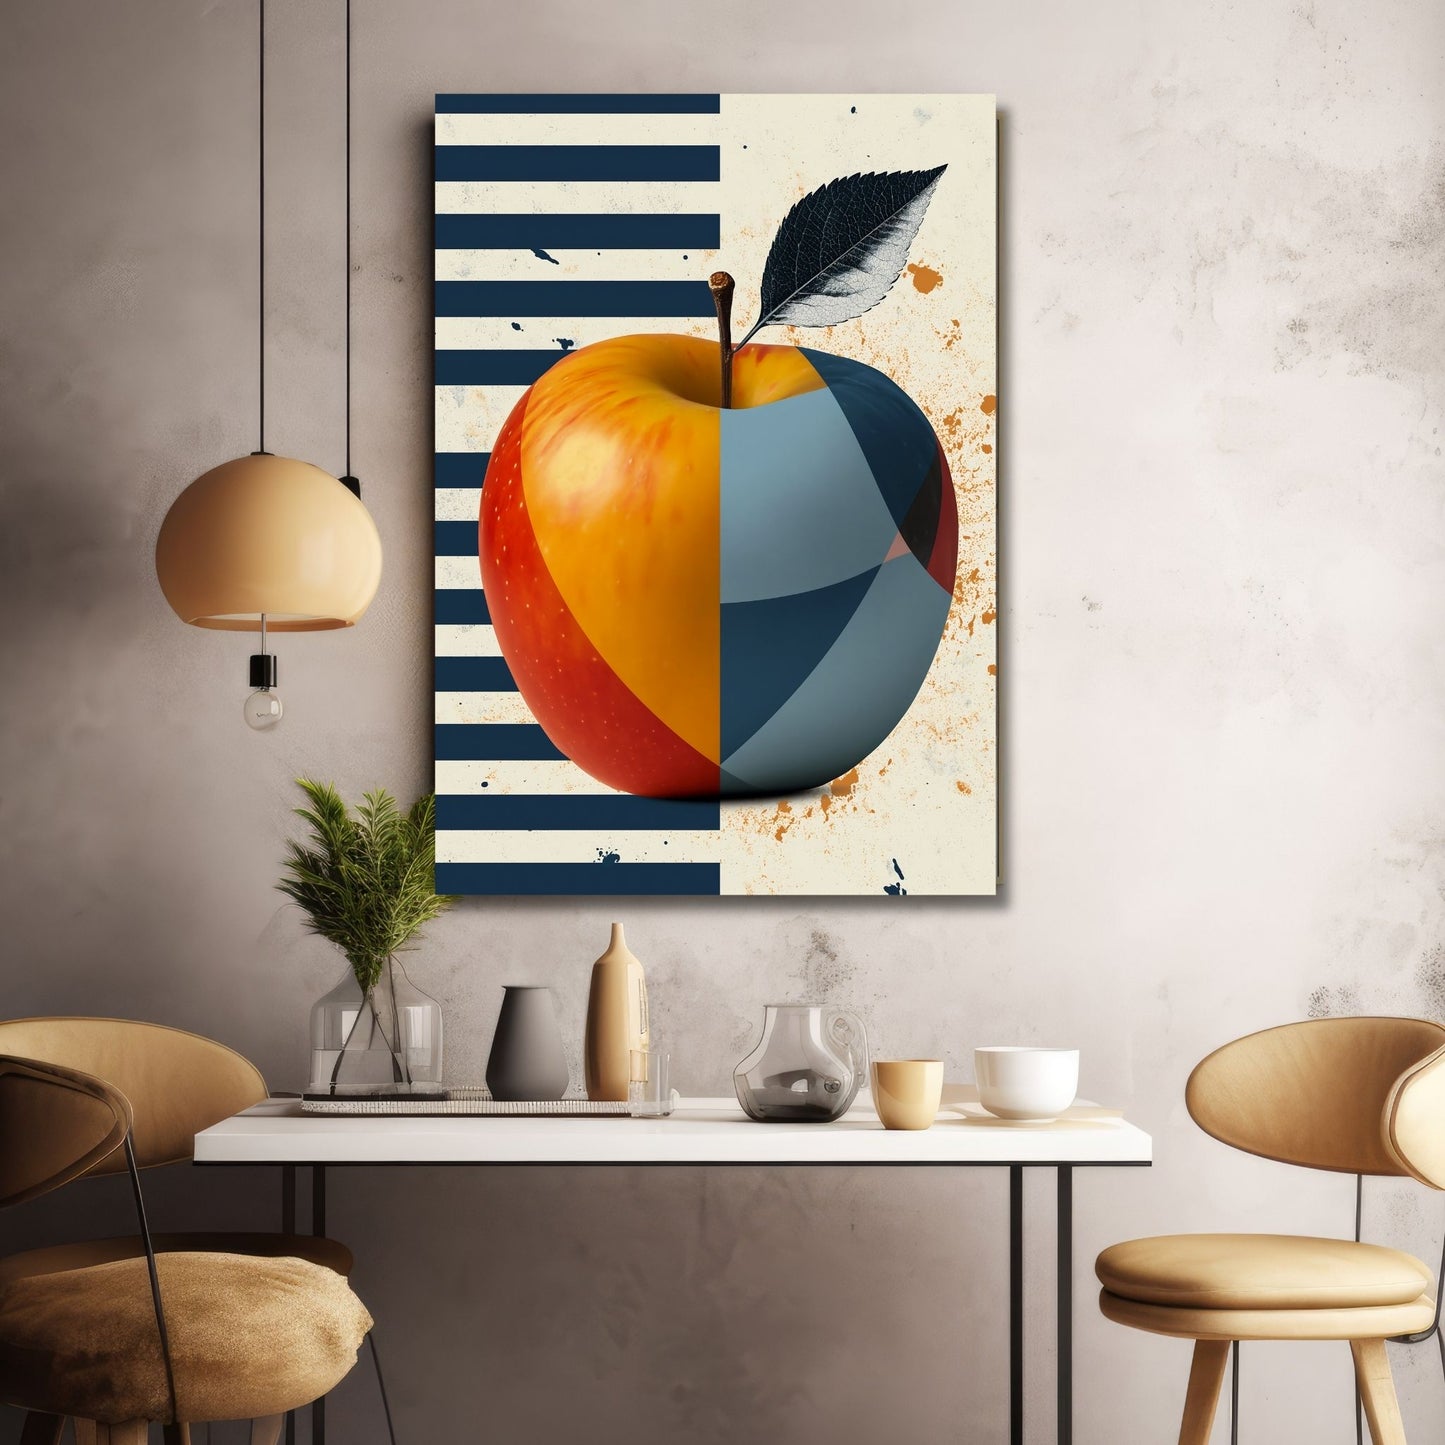 Illustrasjonen av et eple, dekorert med abstrakte former i livlige røde, gule og blåfarger. Bakgrunnen, delt i to med en halvdel i blå striper, og den andre halvdelen i beige. Illustrasjonen viser motivet på lerret.